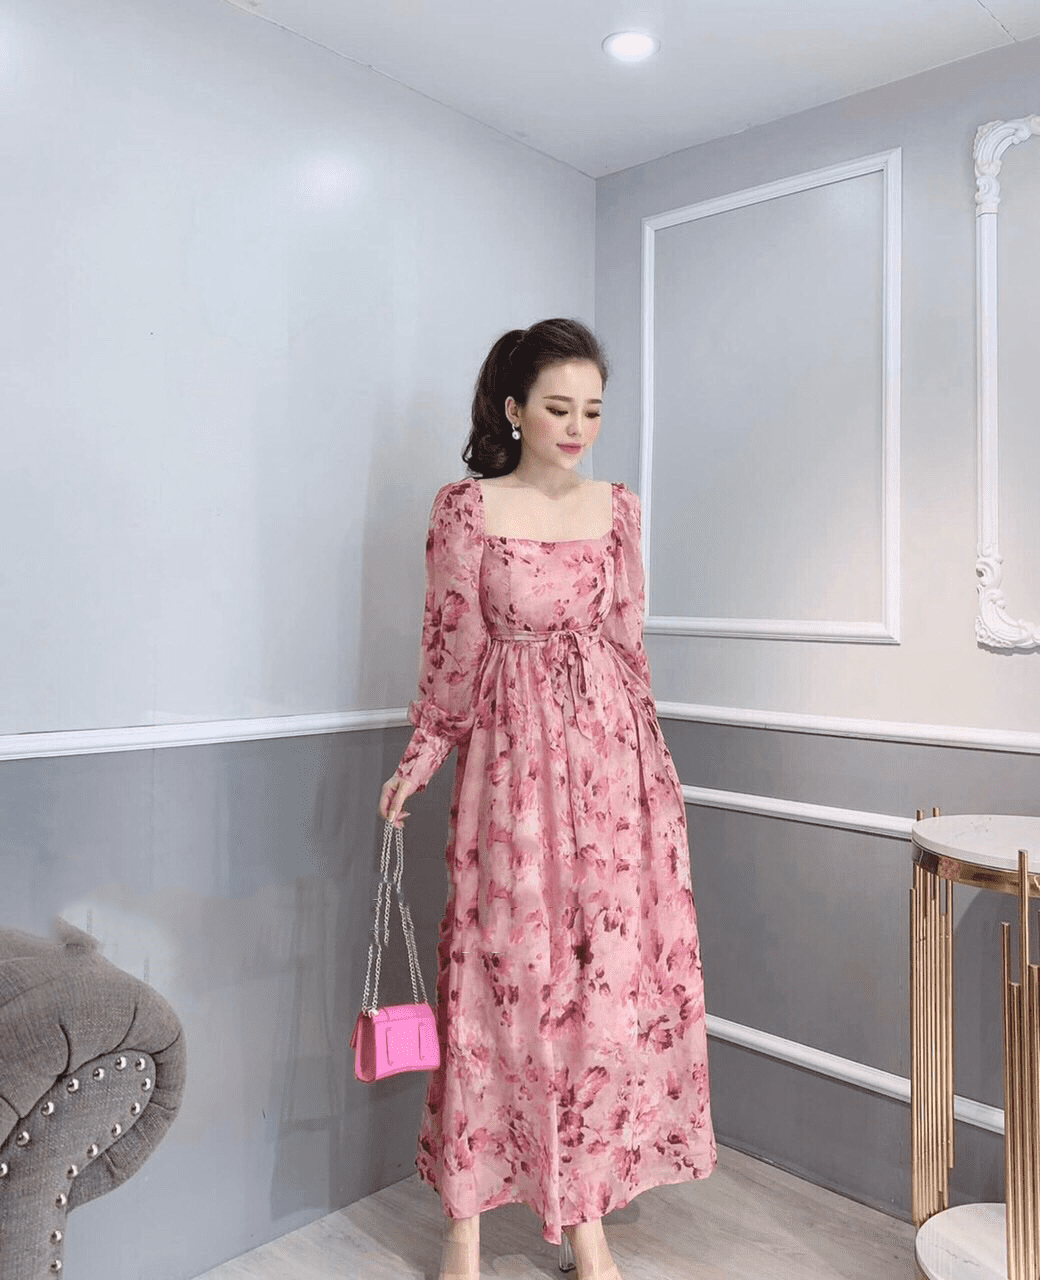 D229 : Đầm voan hoa nhí cổ thắt nơ viền bèo tay loe dài - yishop.com.vn